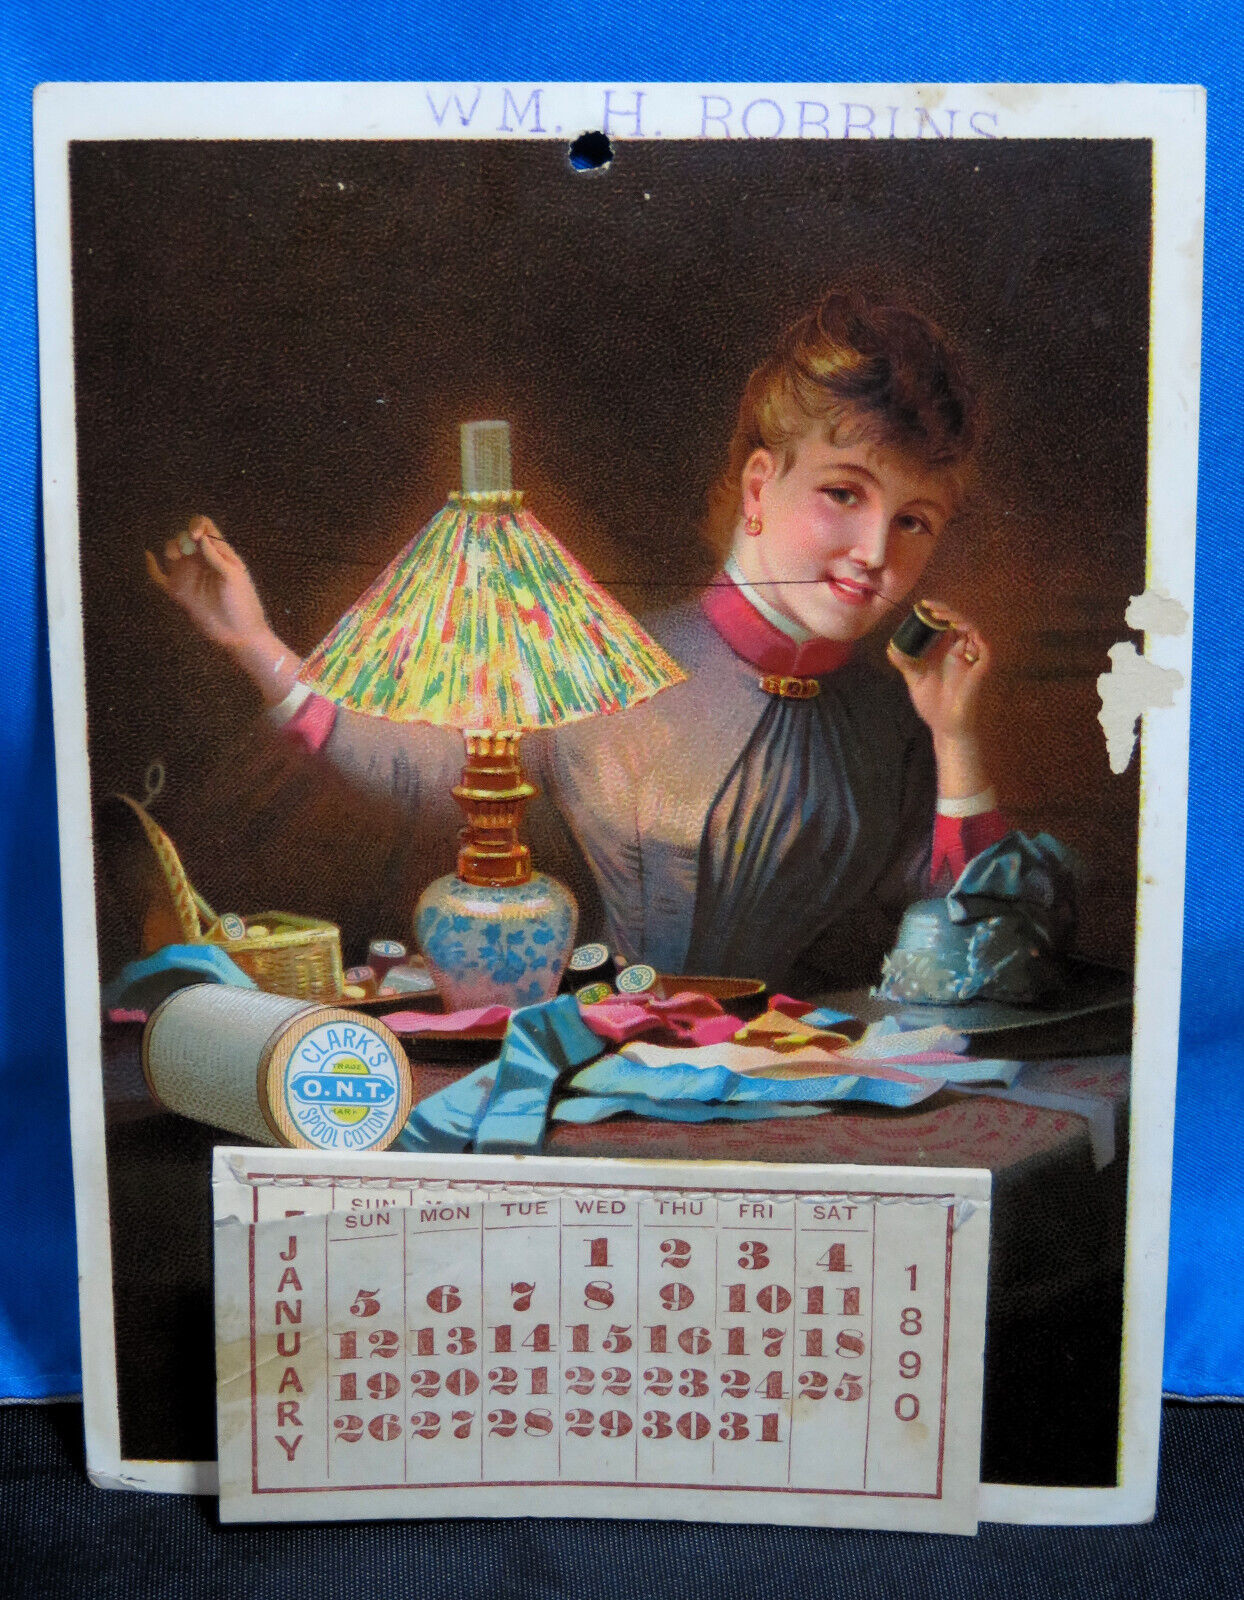 Antique Victorian American Clark's Spool Cotton Advertising Trade Card Calendar